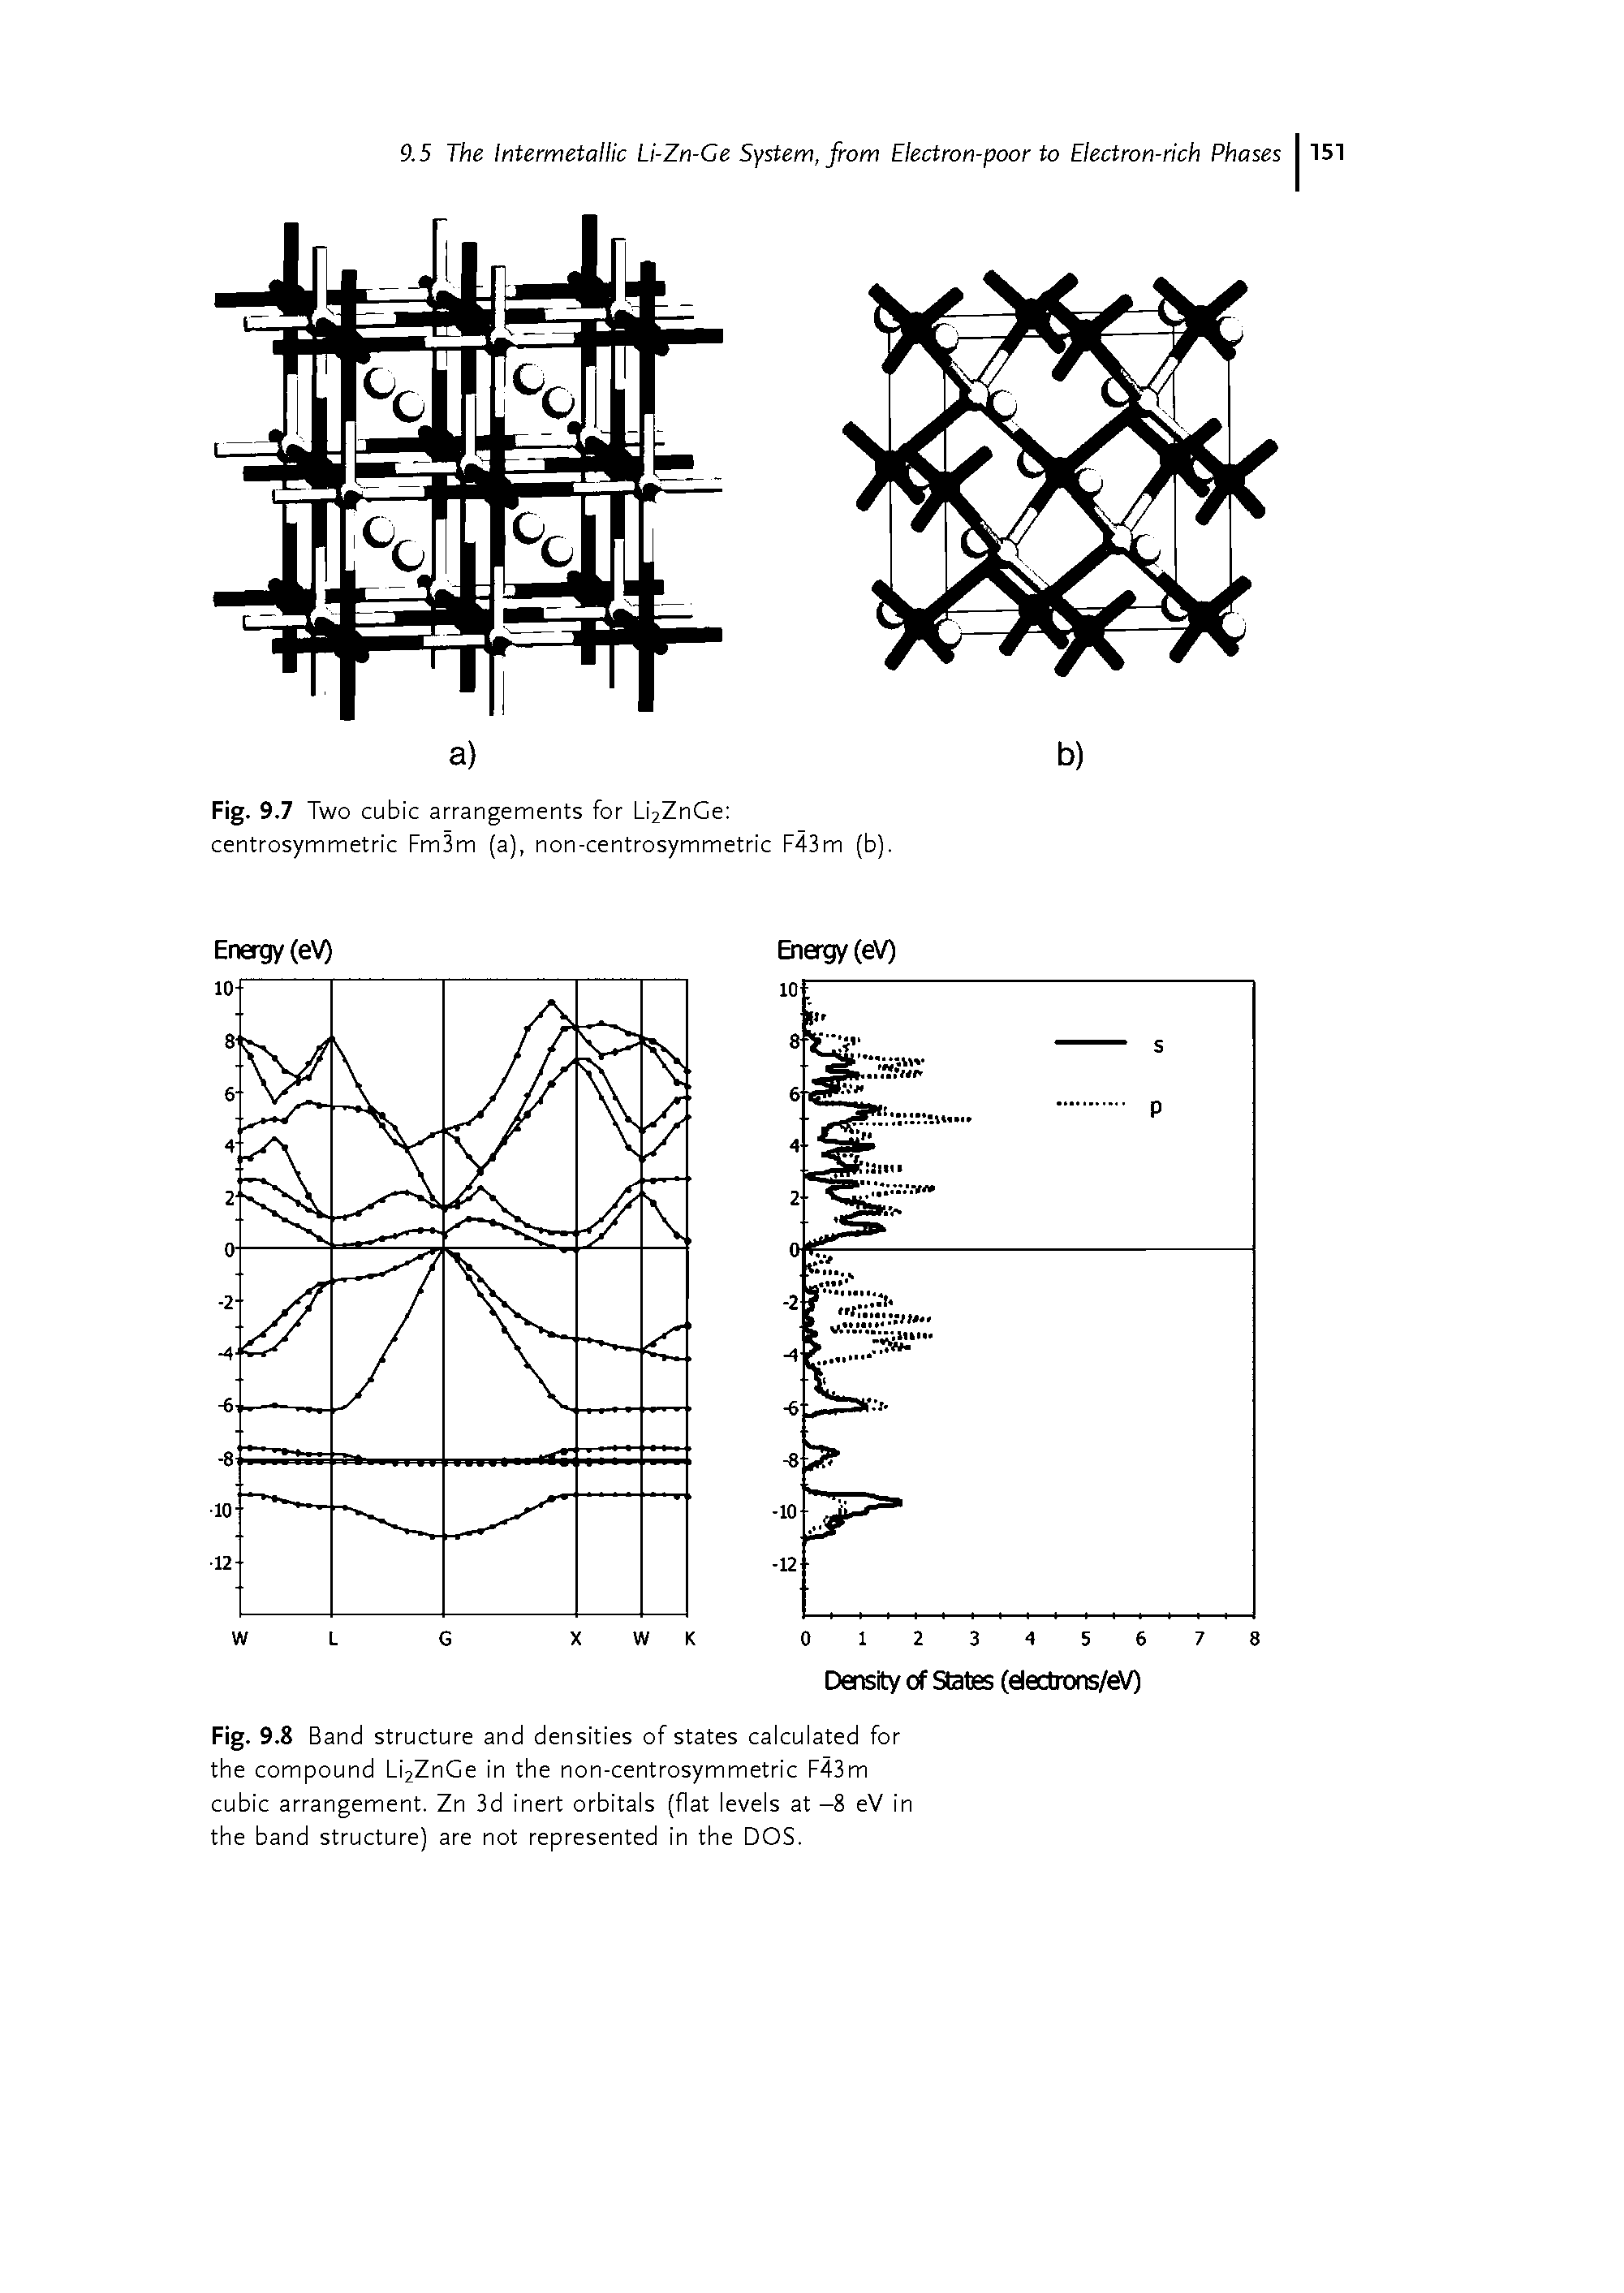 Fig. 9.7 Two cubic arrangements for Li2ZnGe centrosymmetric Fm3m (a), non-centrosymmetric F43m (b).